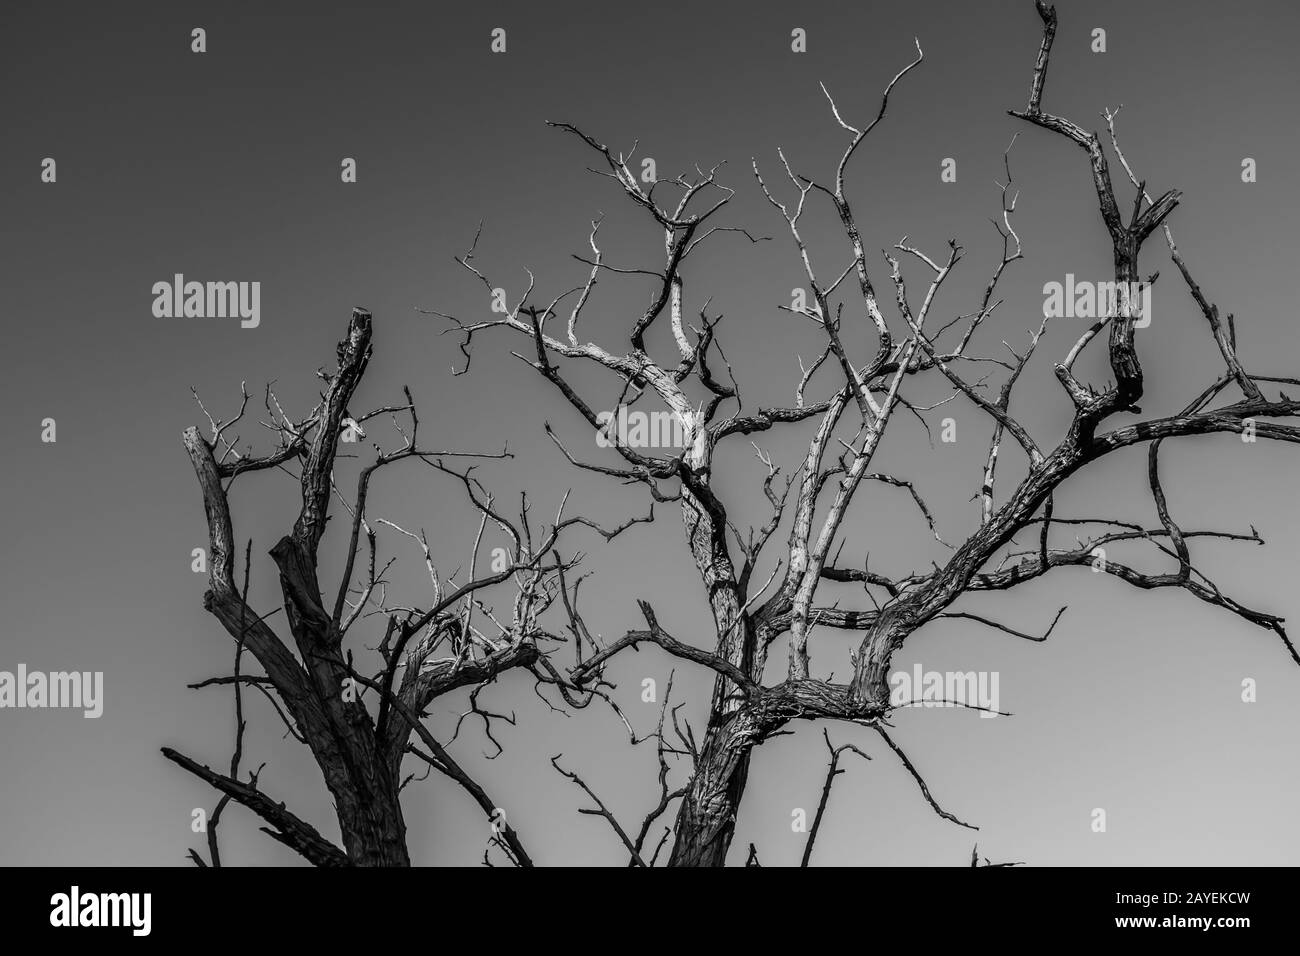 Kahle Baumkrone mit mehreren strahlenden Ästen gegen einen grauen Himmel, Nahaufnahme schwarz-weiß des Stammes und Äste an einem Winternachmittag. Stockfoto